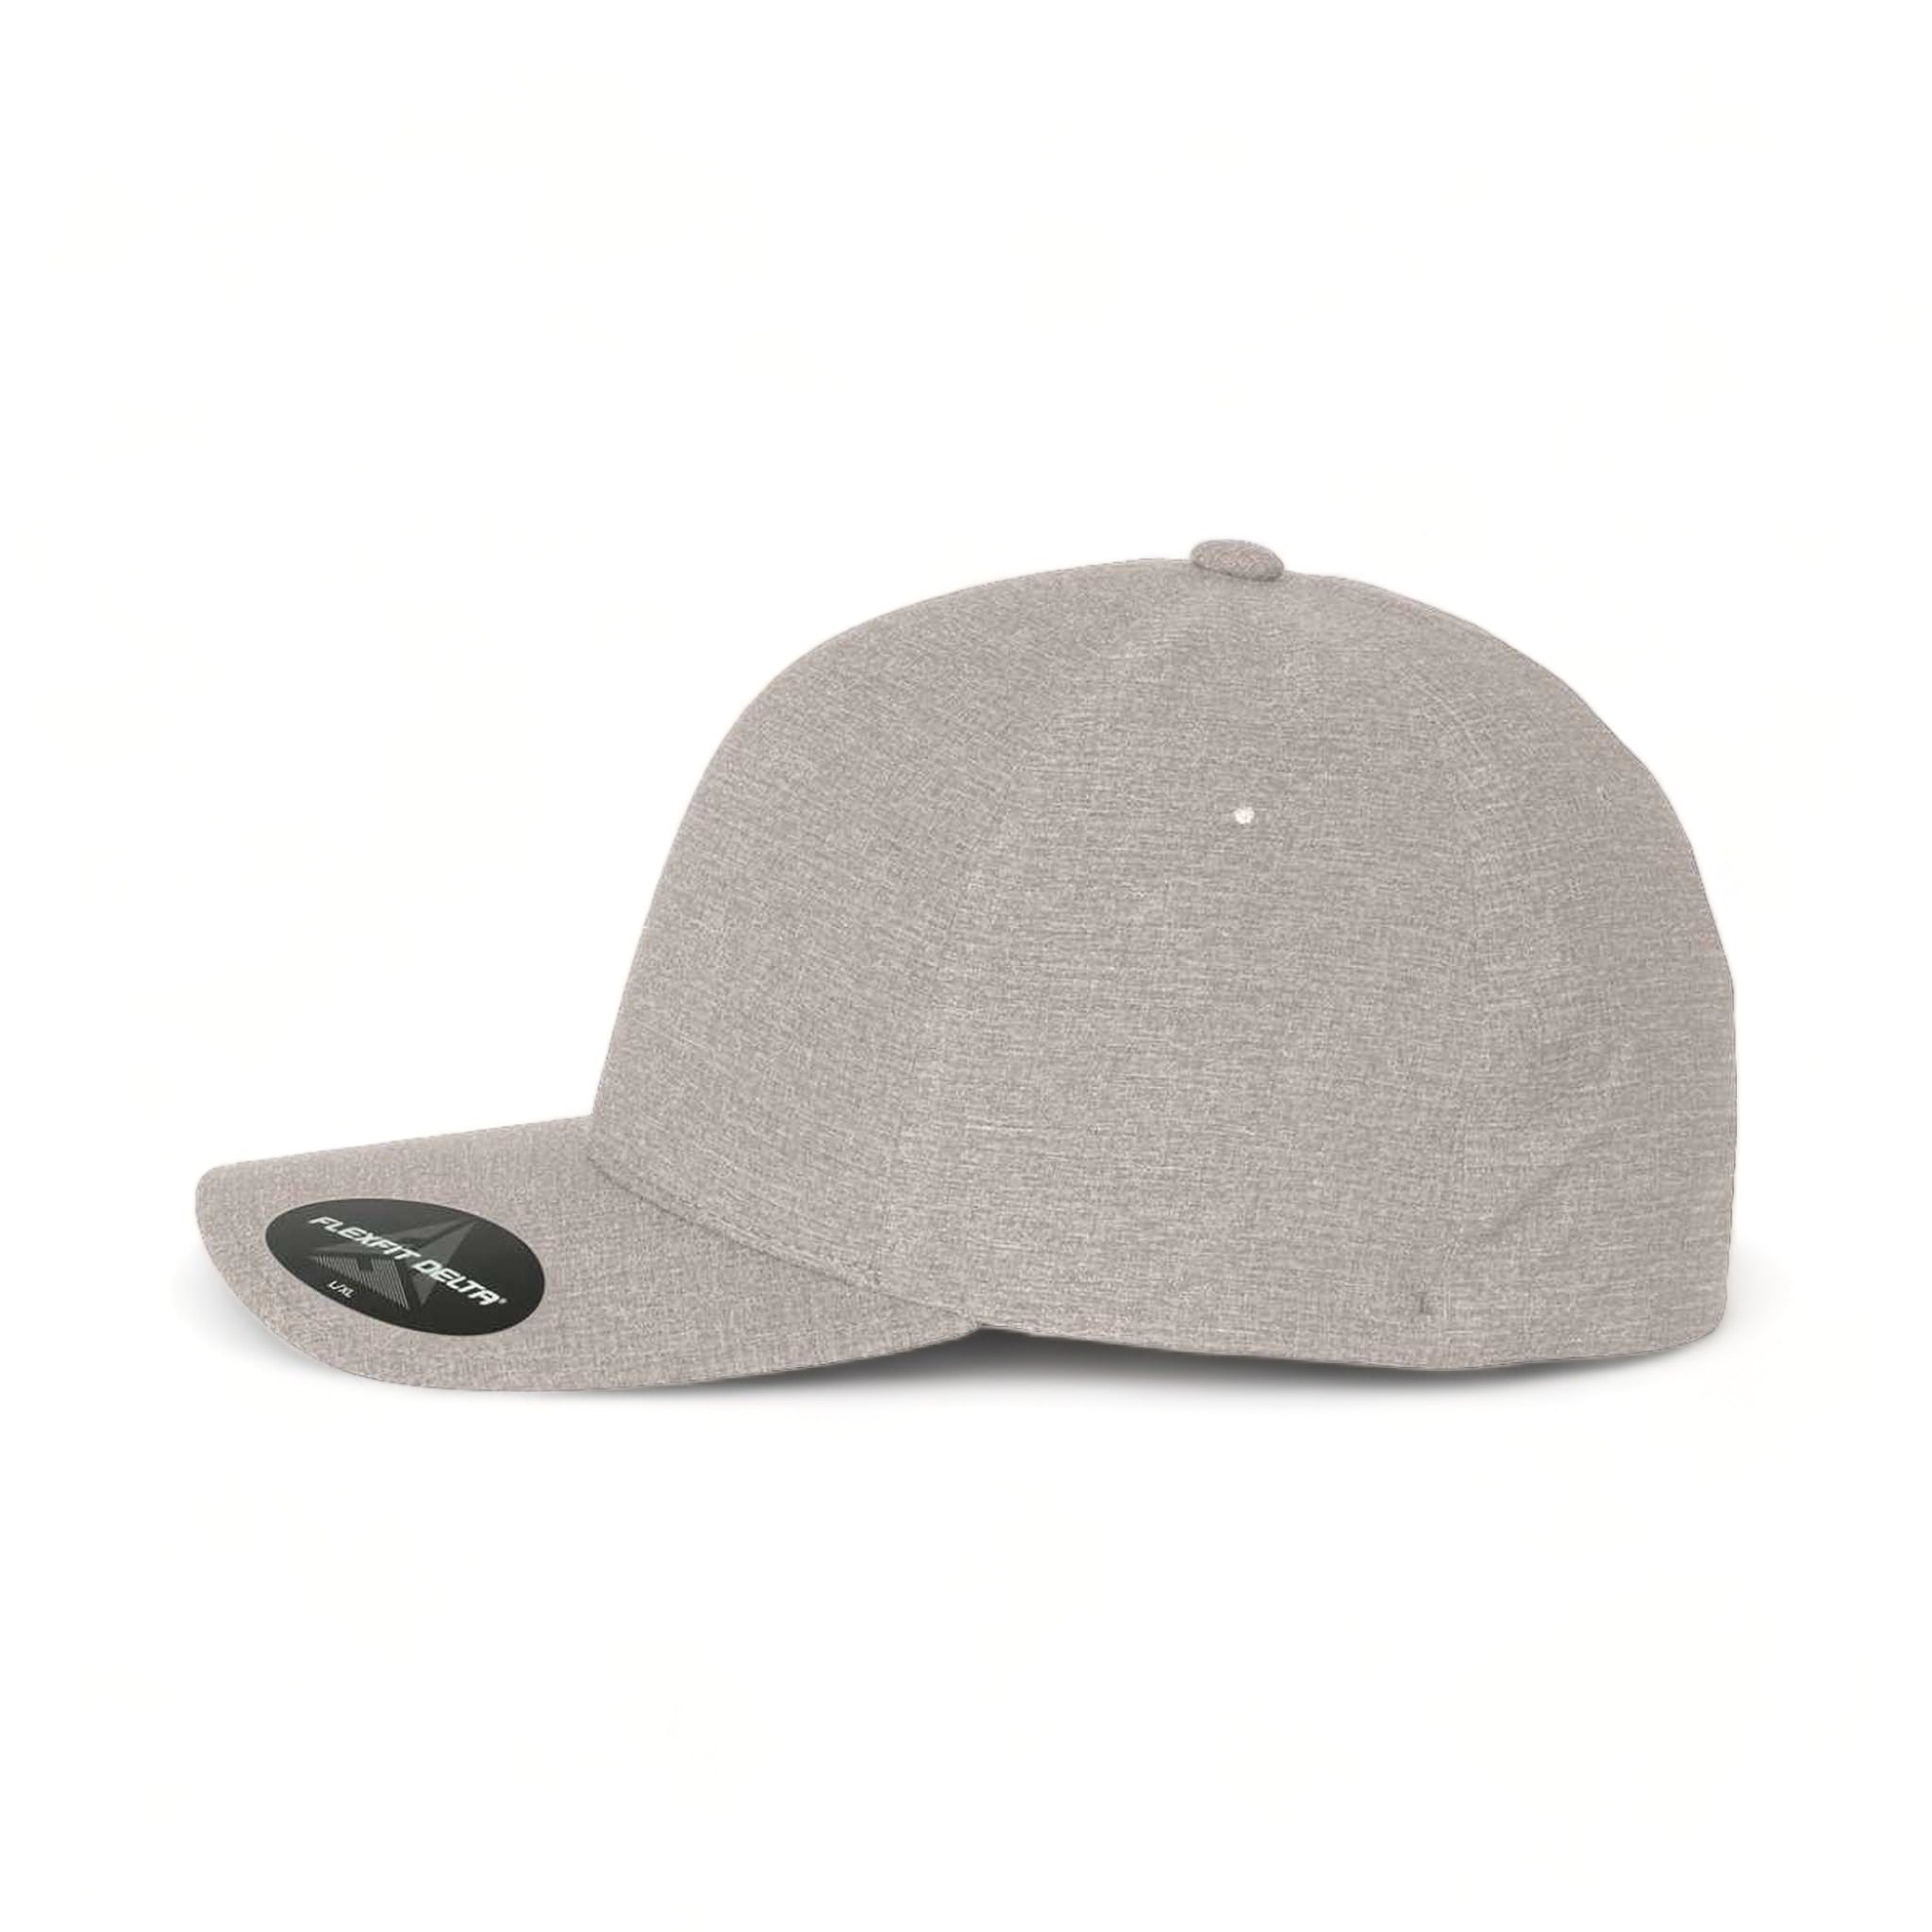 Side view of Flexfit 180 custom hat in mélange silver